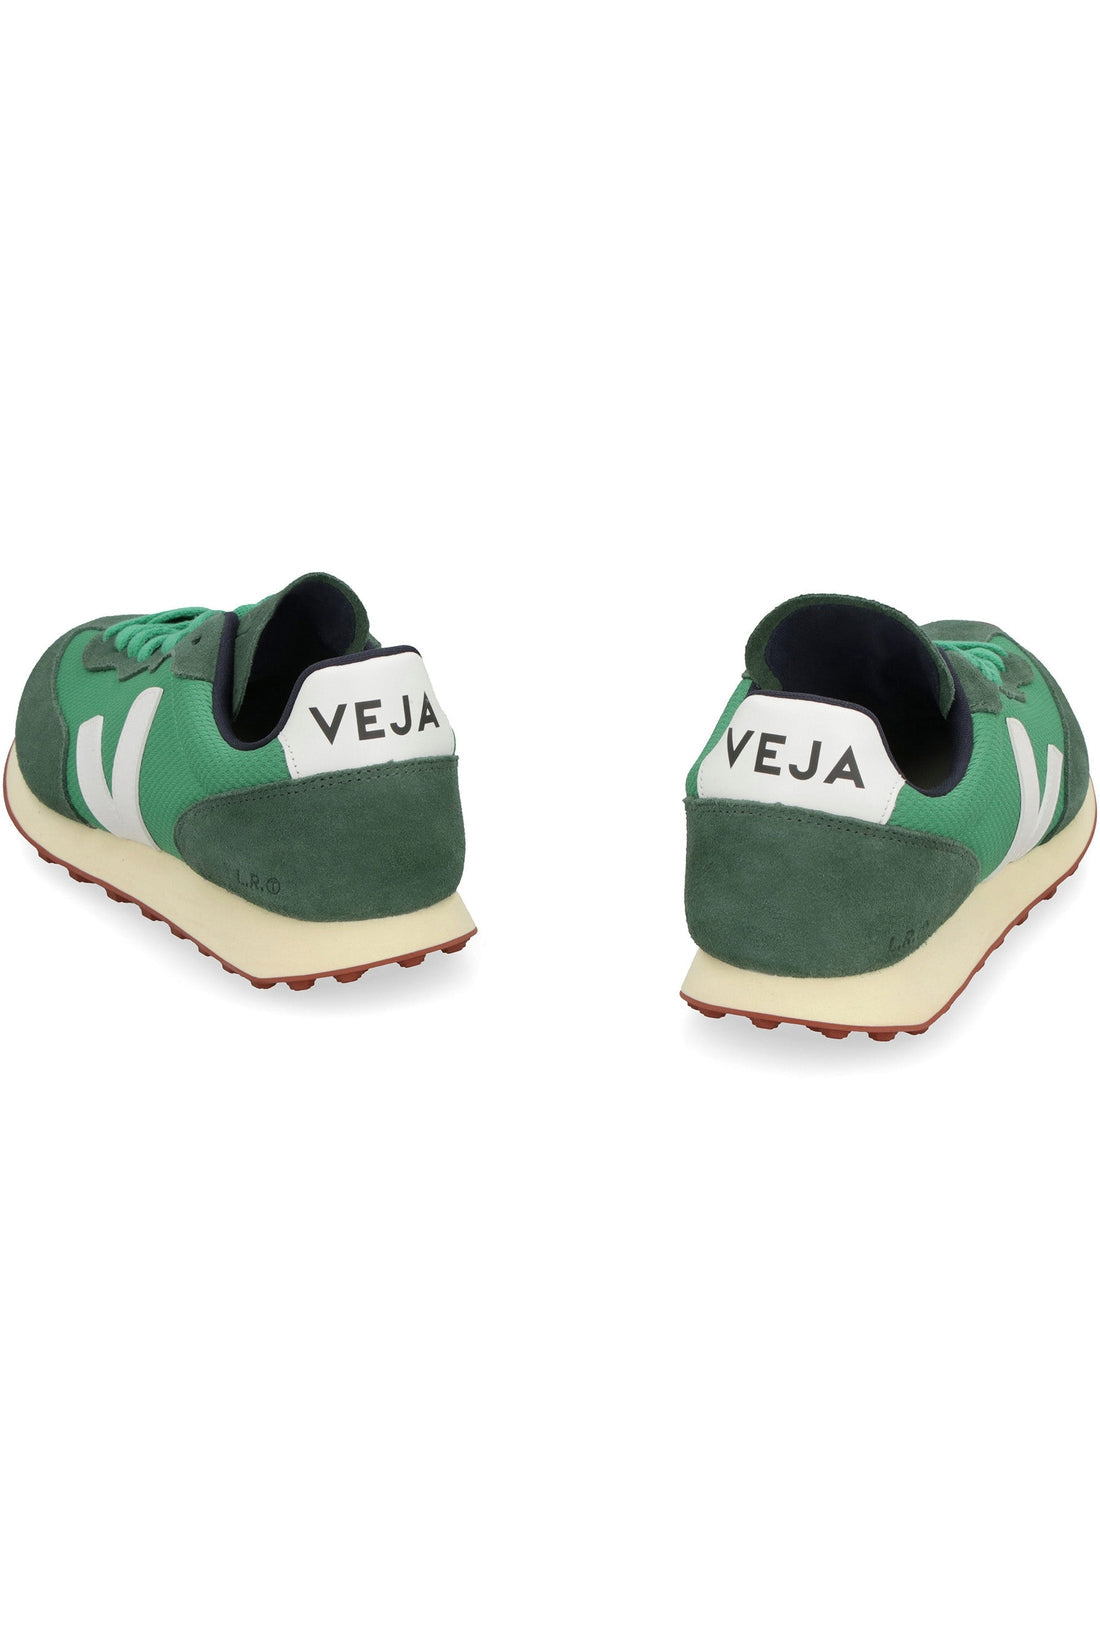 Veja-OUTLET-SALE-Rio Branco low-top sneakers-ARCHIVIST